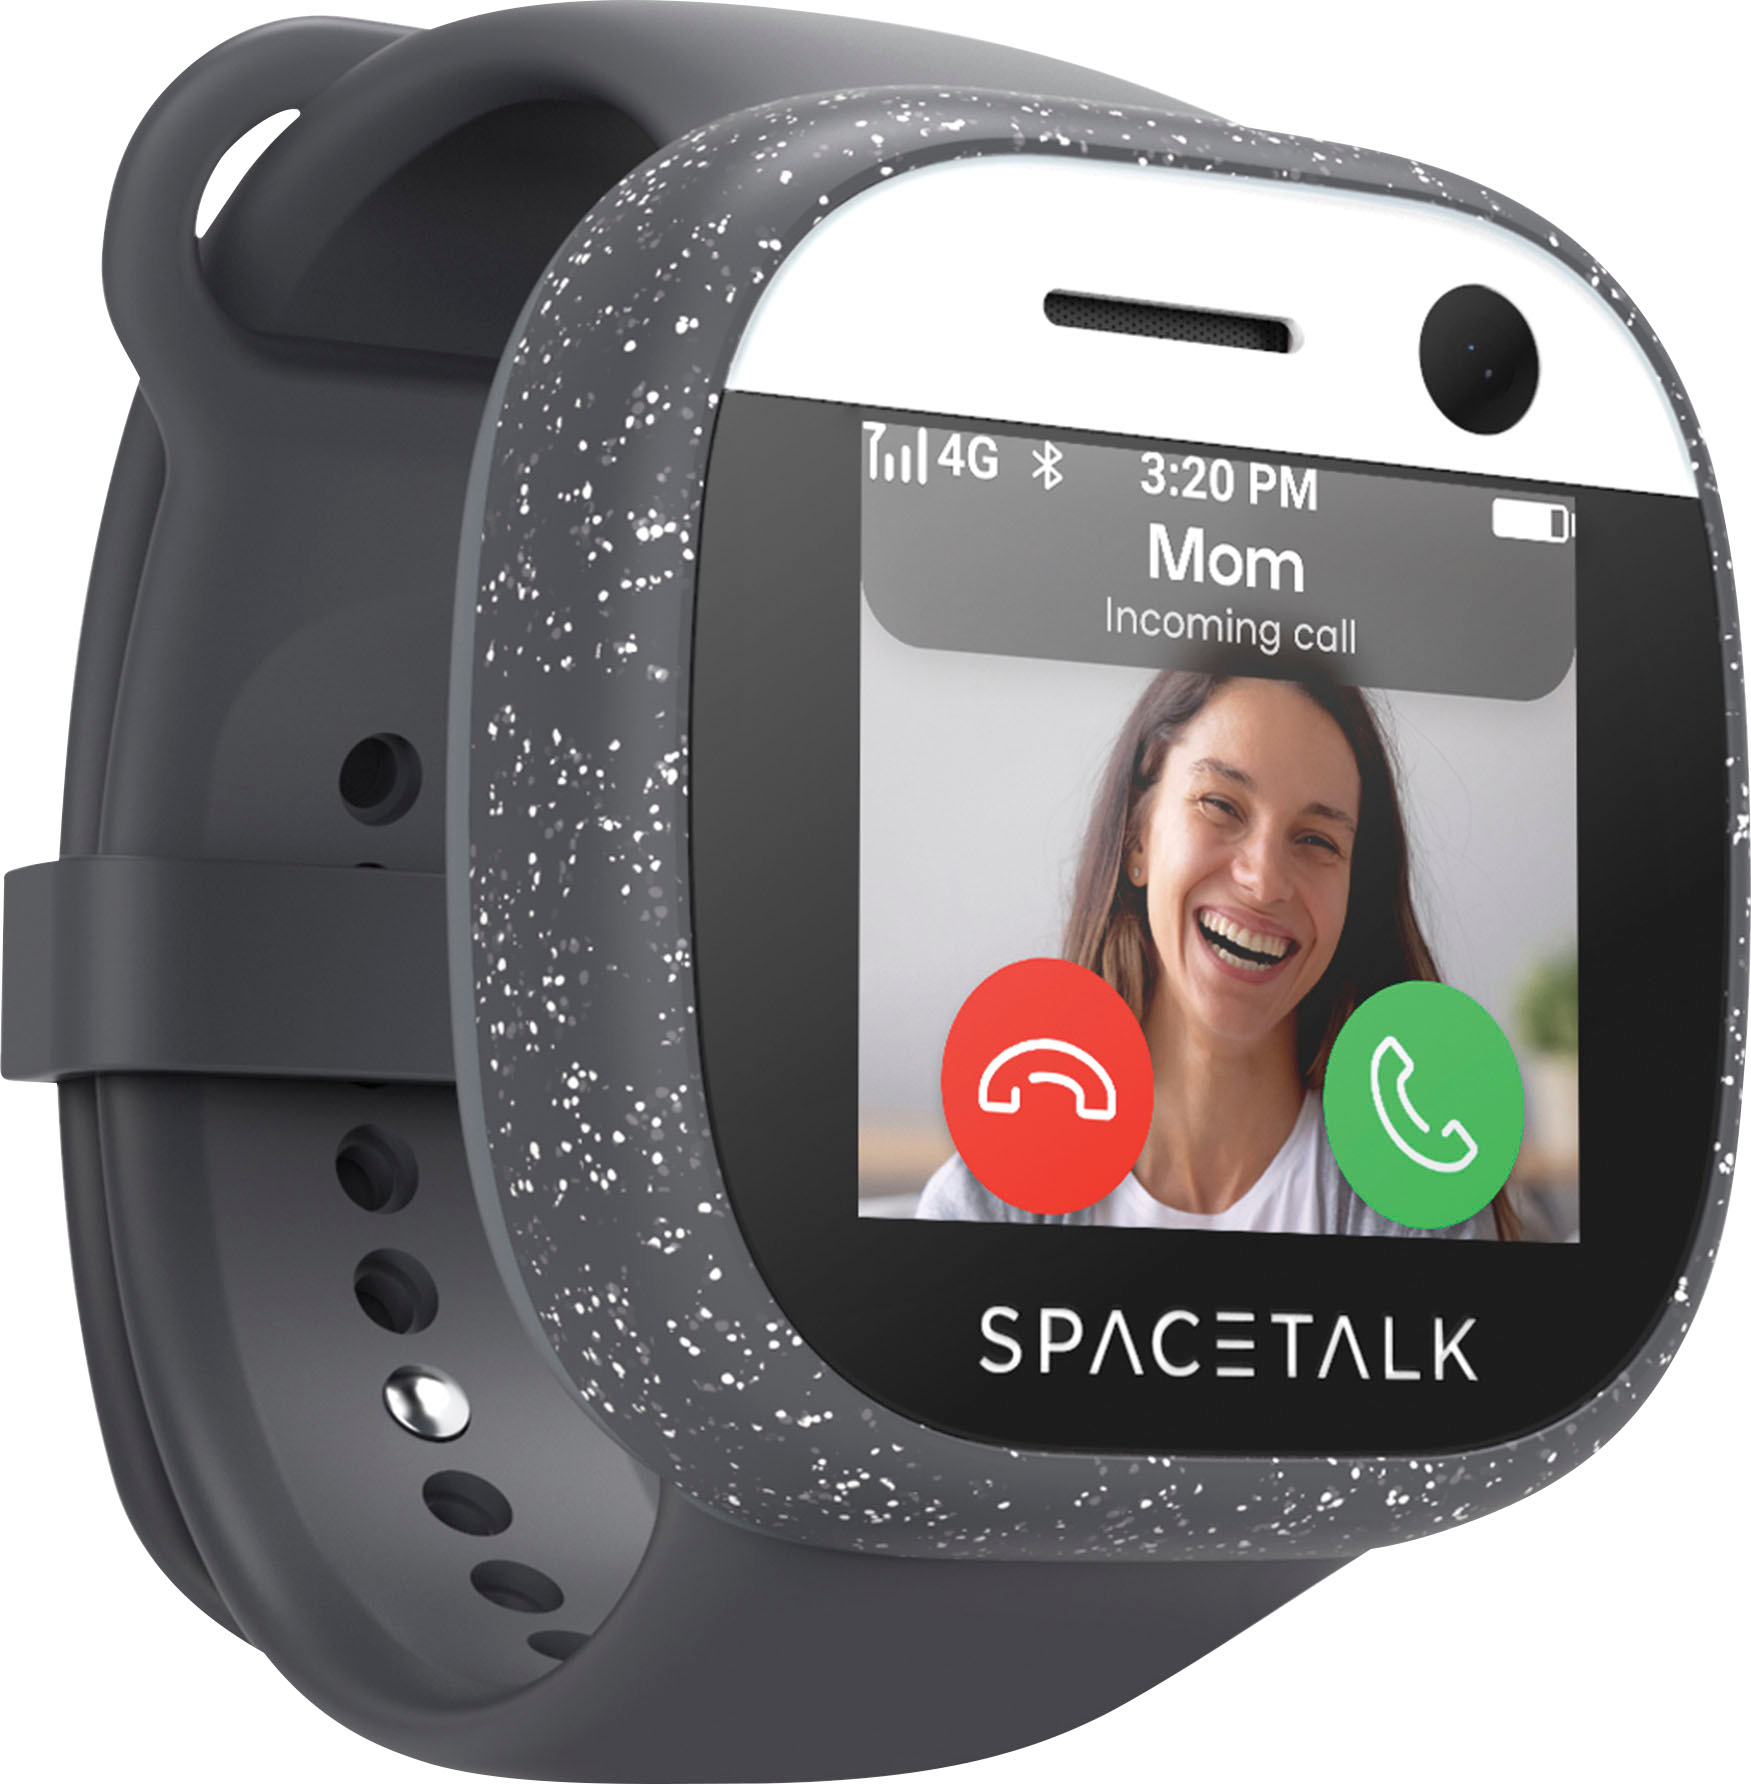 Ongewijzigd Ijver stapel Spacetalk Adventurer 4G Kids Smart Watch Phone and GPS Tracker Midnight  ST2-MN-2 - Best Buy